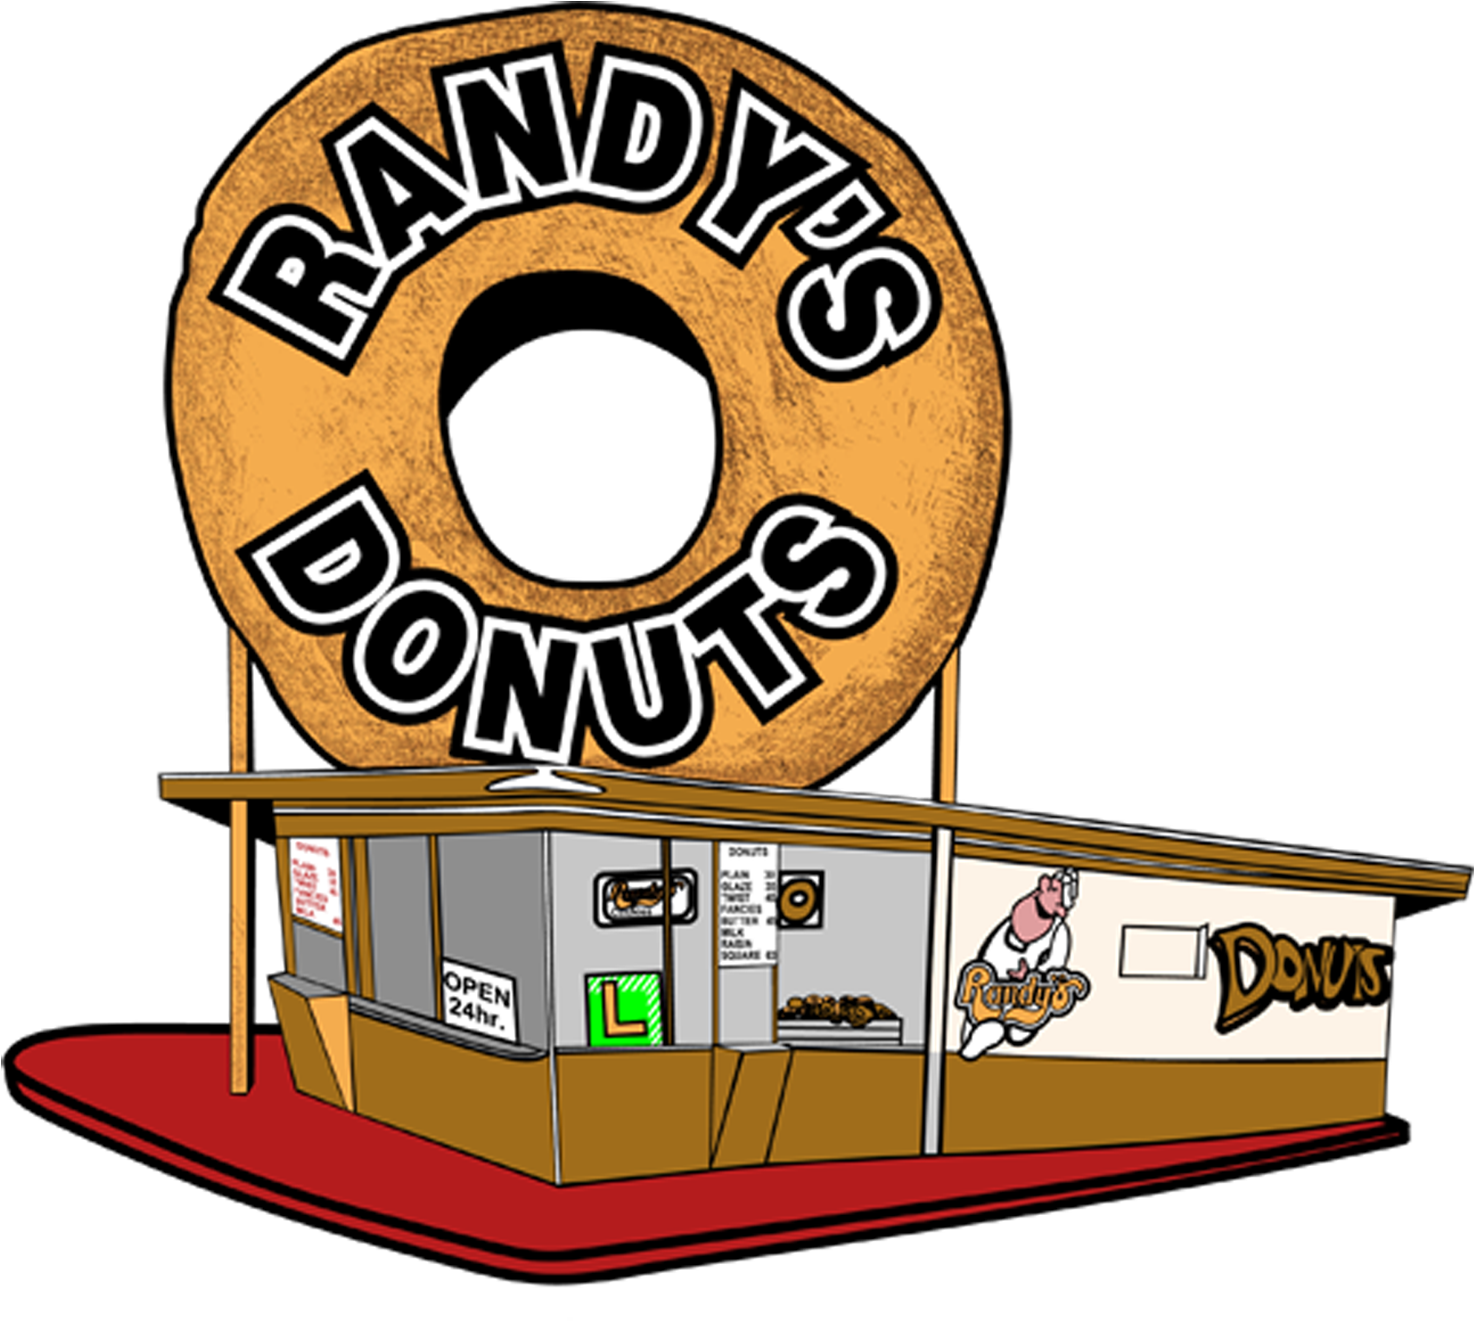 Randy's Doughnut (1500x1500)